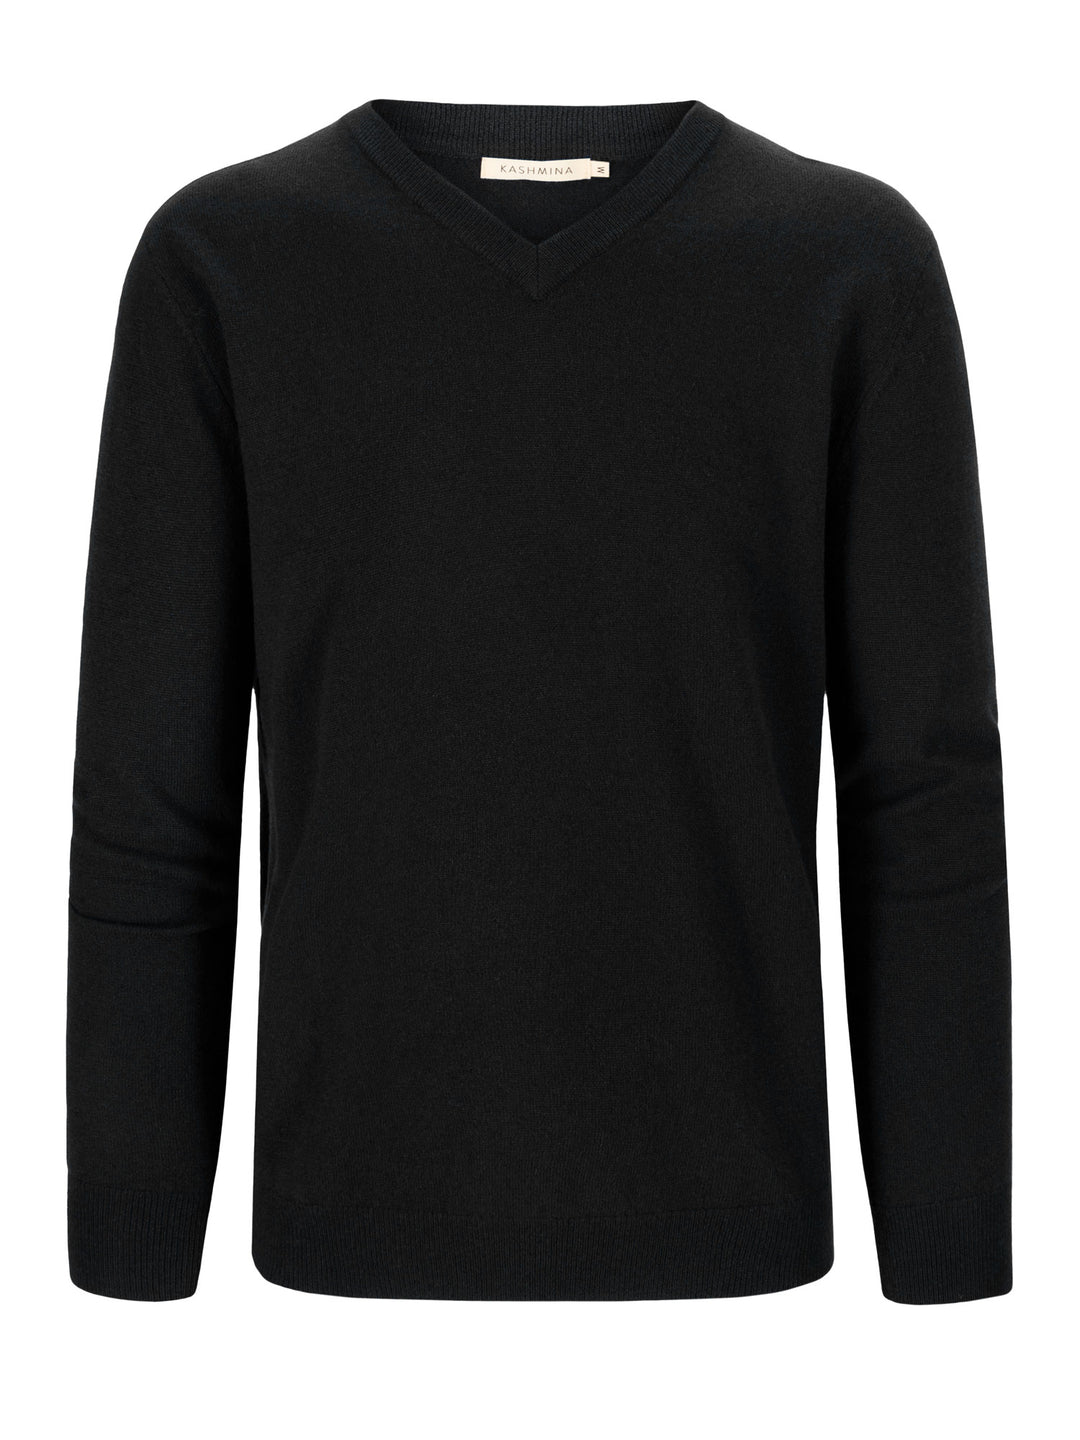 Black v-neck cashmere sweater in 100% cashmere. Scandinavian design by Kashmina.